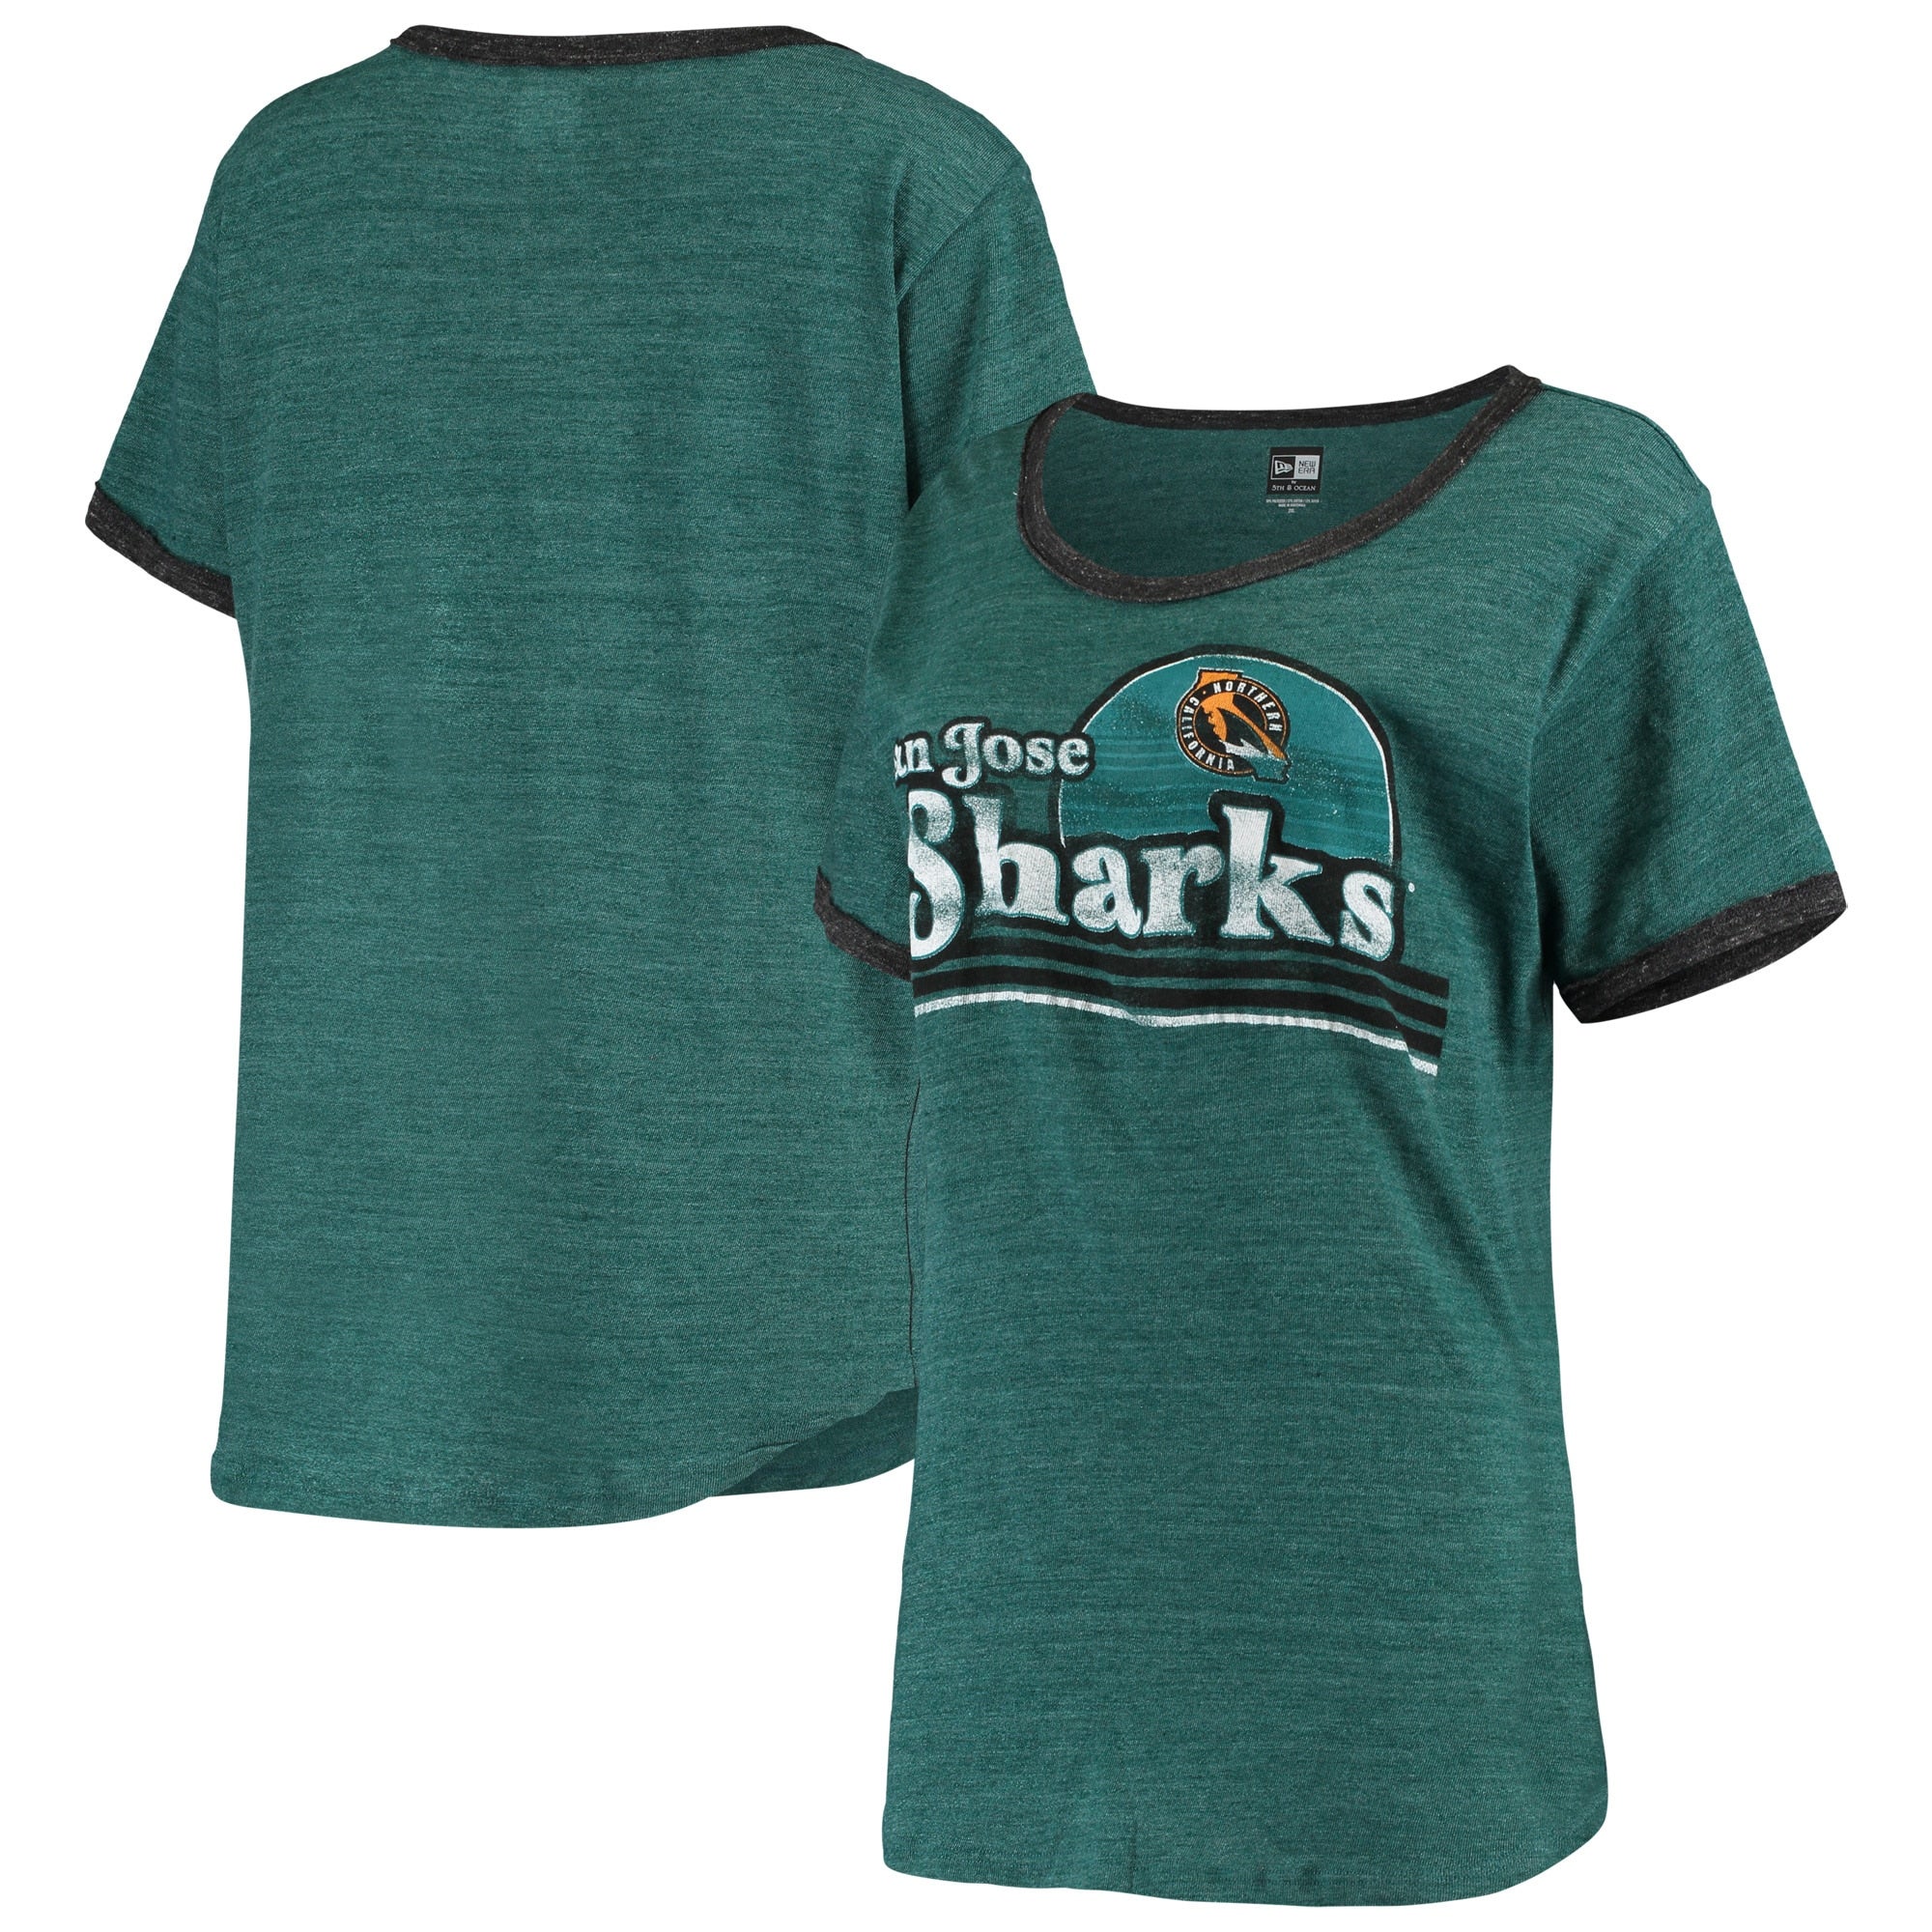 5th & Ocean by New Era Sharks Retro Ringer Tri-Blend T-Shirt - Women's